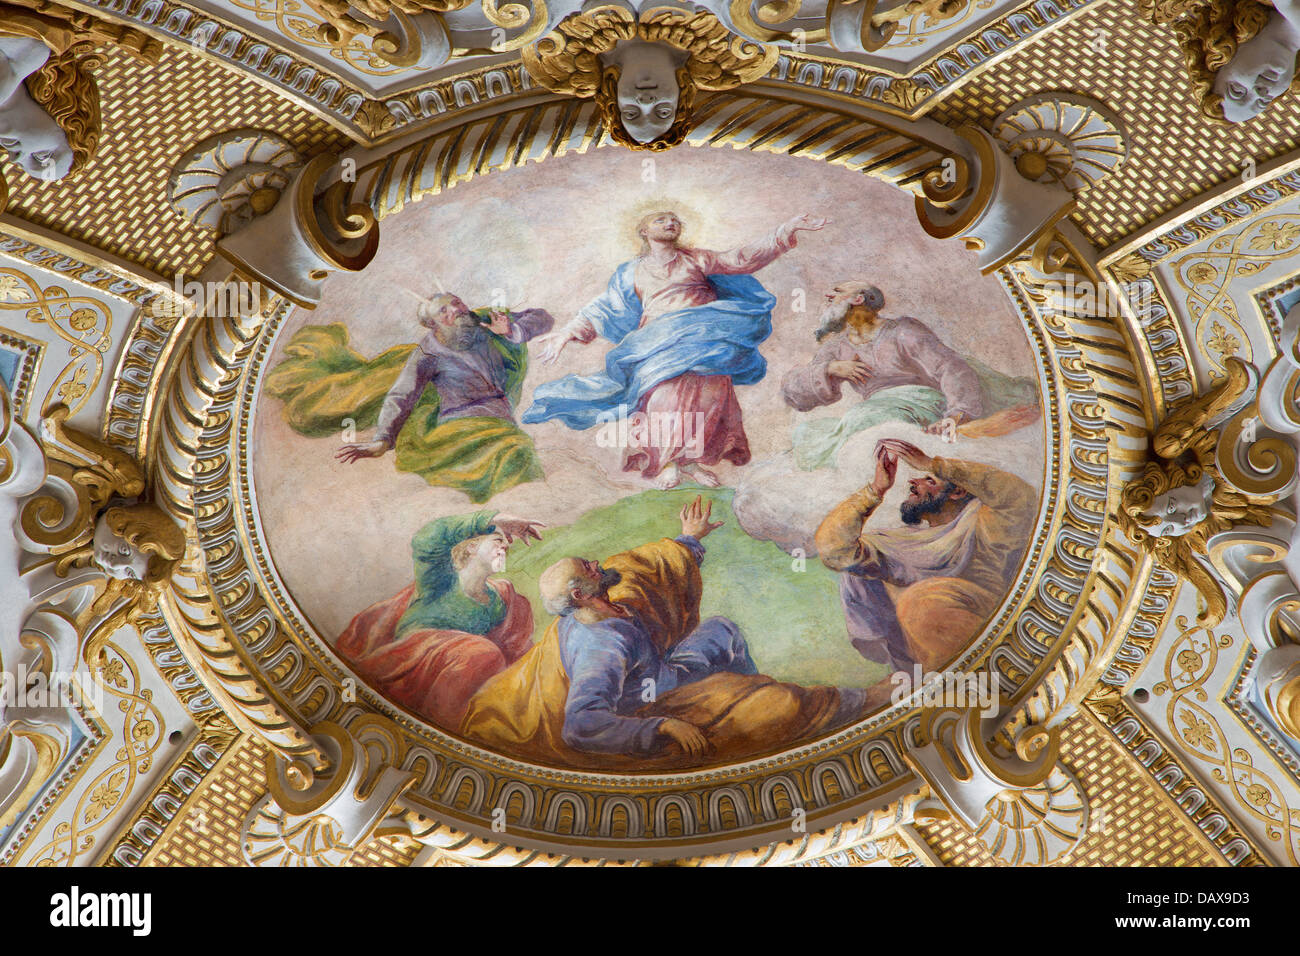 VIENNA - luglio 3: affresco barocco della Trasfigurazione del Signore dal soffitto in Michaelerkirche o st. Michael Church Foto Stock